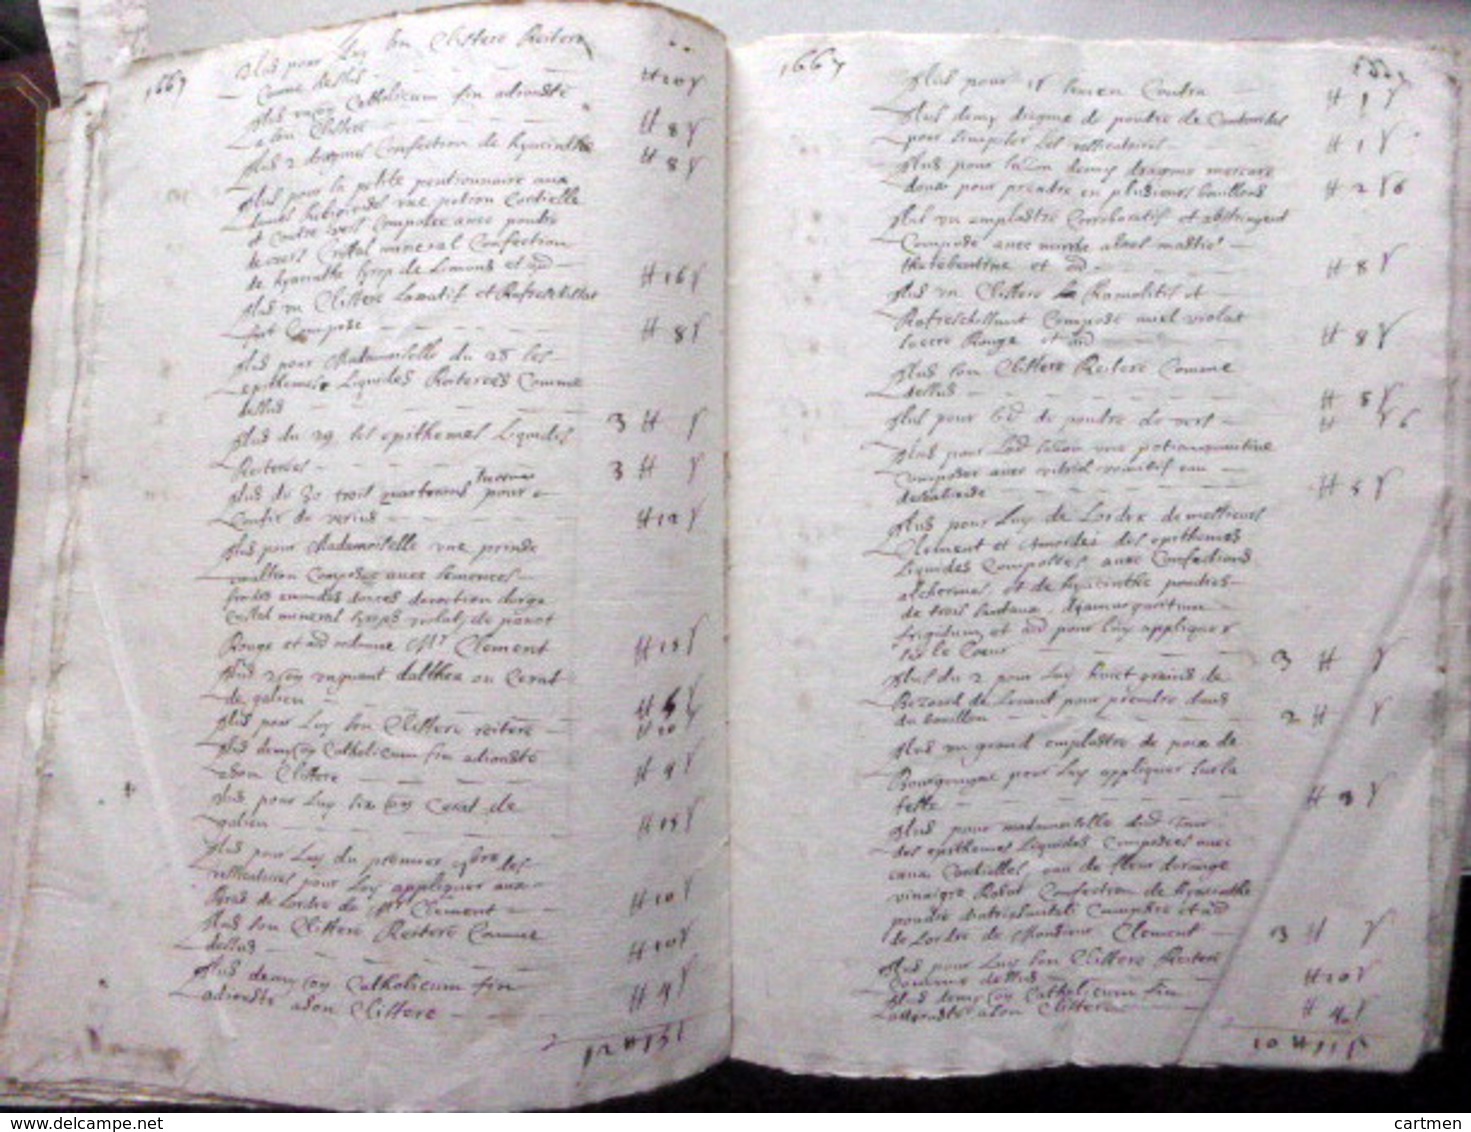 MEDECINE APOTHICAIRE 17°  MEDICAMENTS DONNE PAR UN APOTHICAIRE  A M BONNOT LIEUTENANT  MANUSCRIT 1665 - Documents Historiques